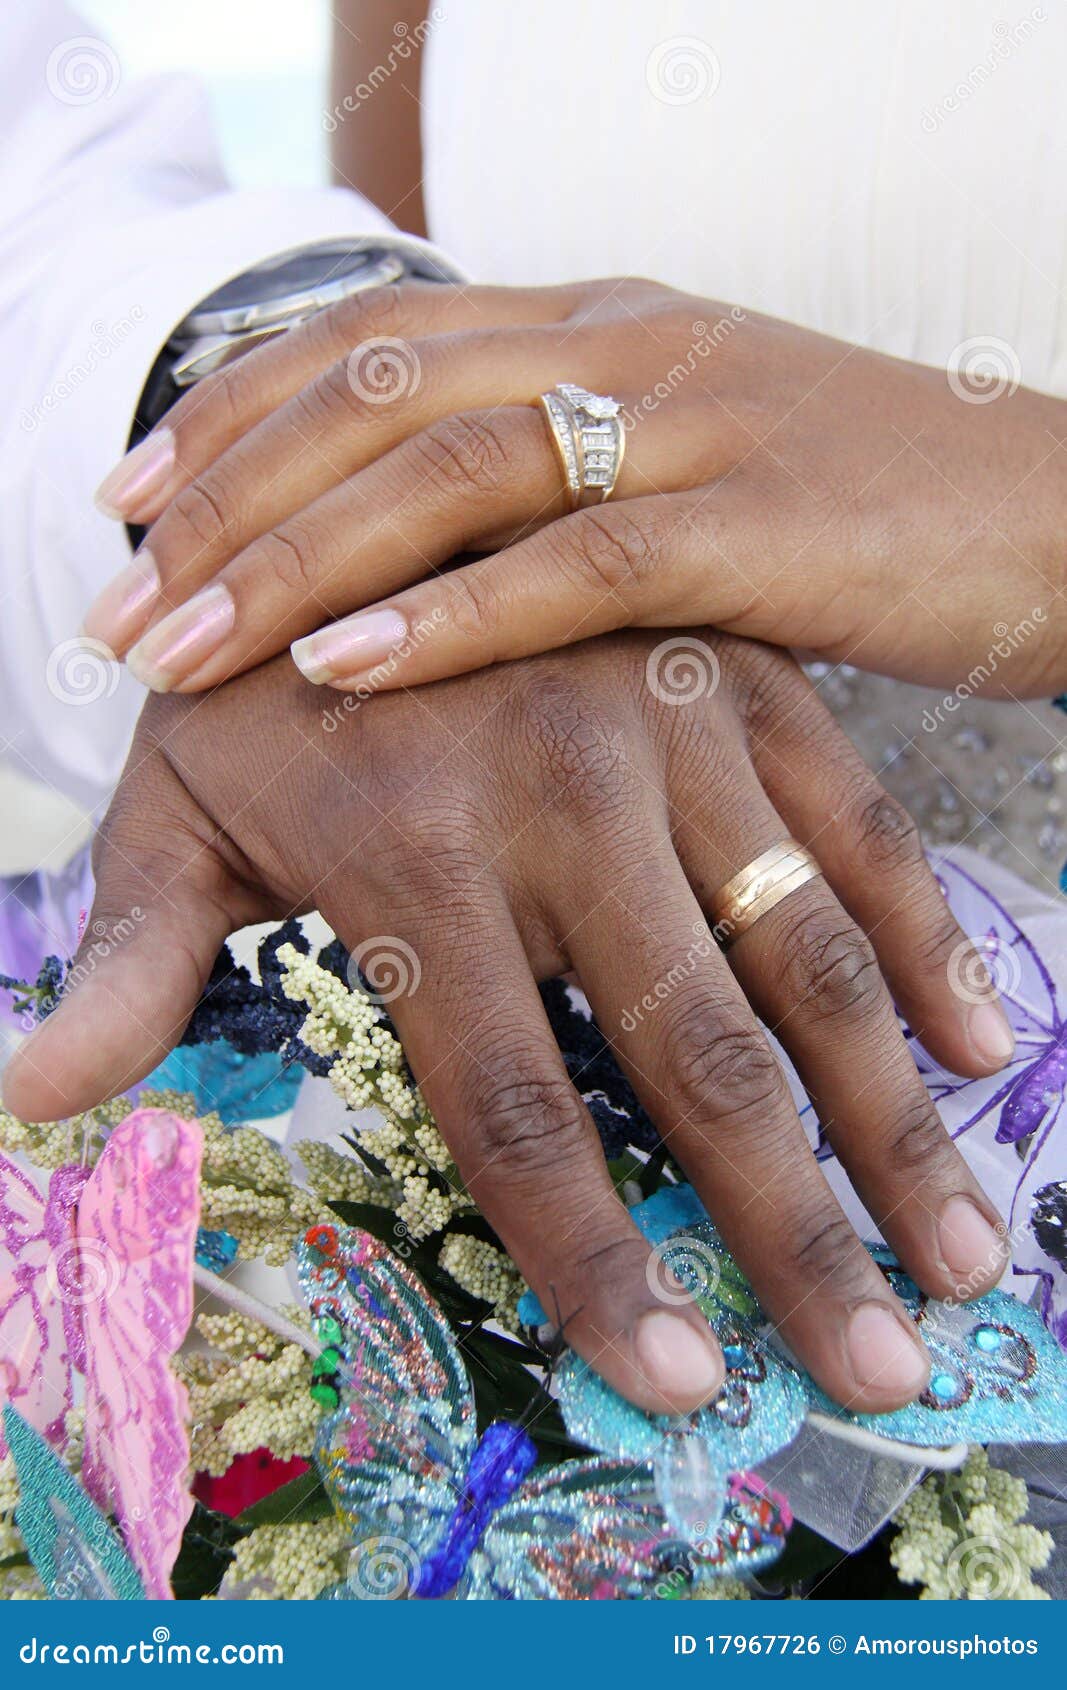 Nicki Minaj Engagement Ring Size, Shape, Price: Details | Us Weekly